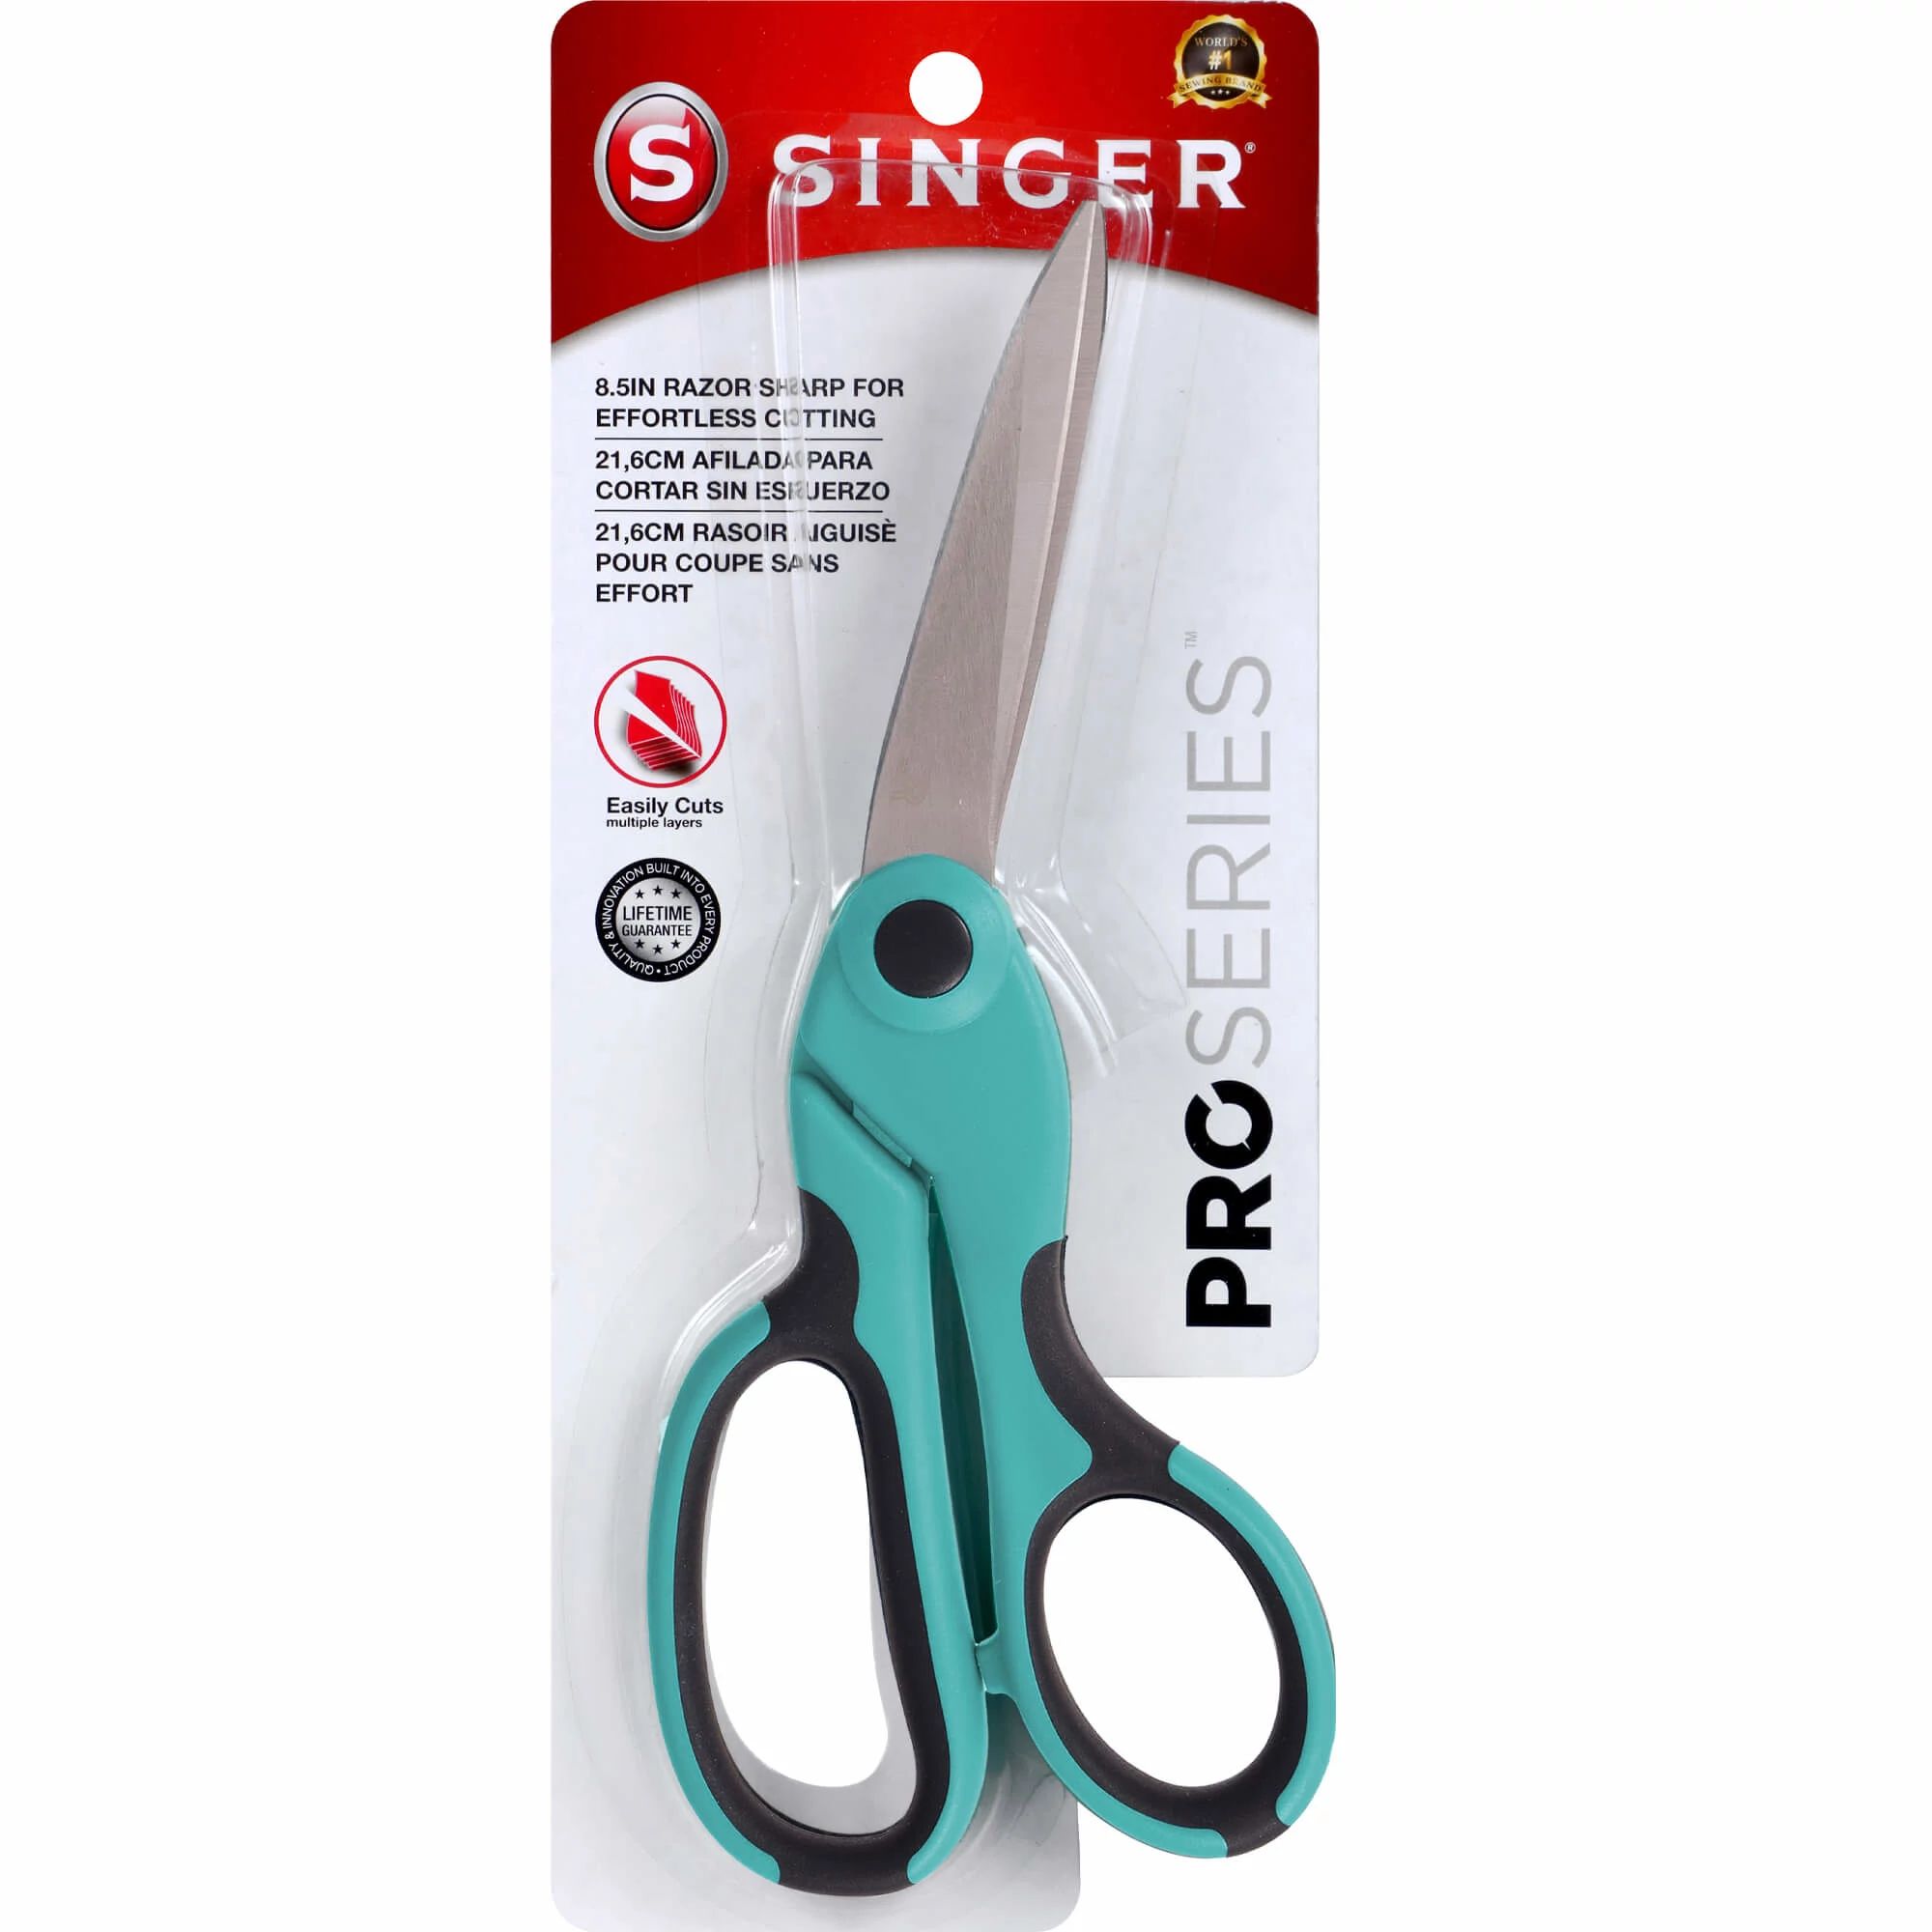 SINGER 8.5" ProSeries™ Scissors